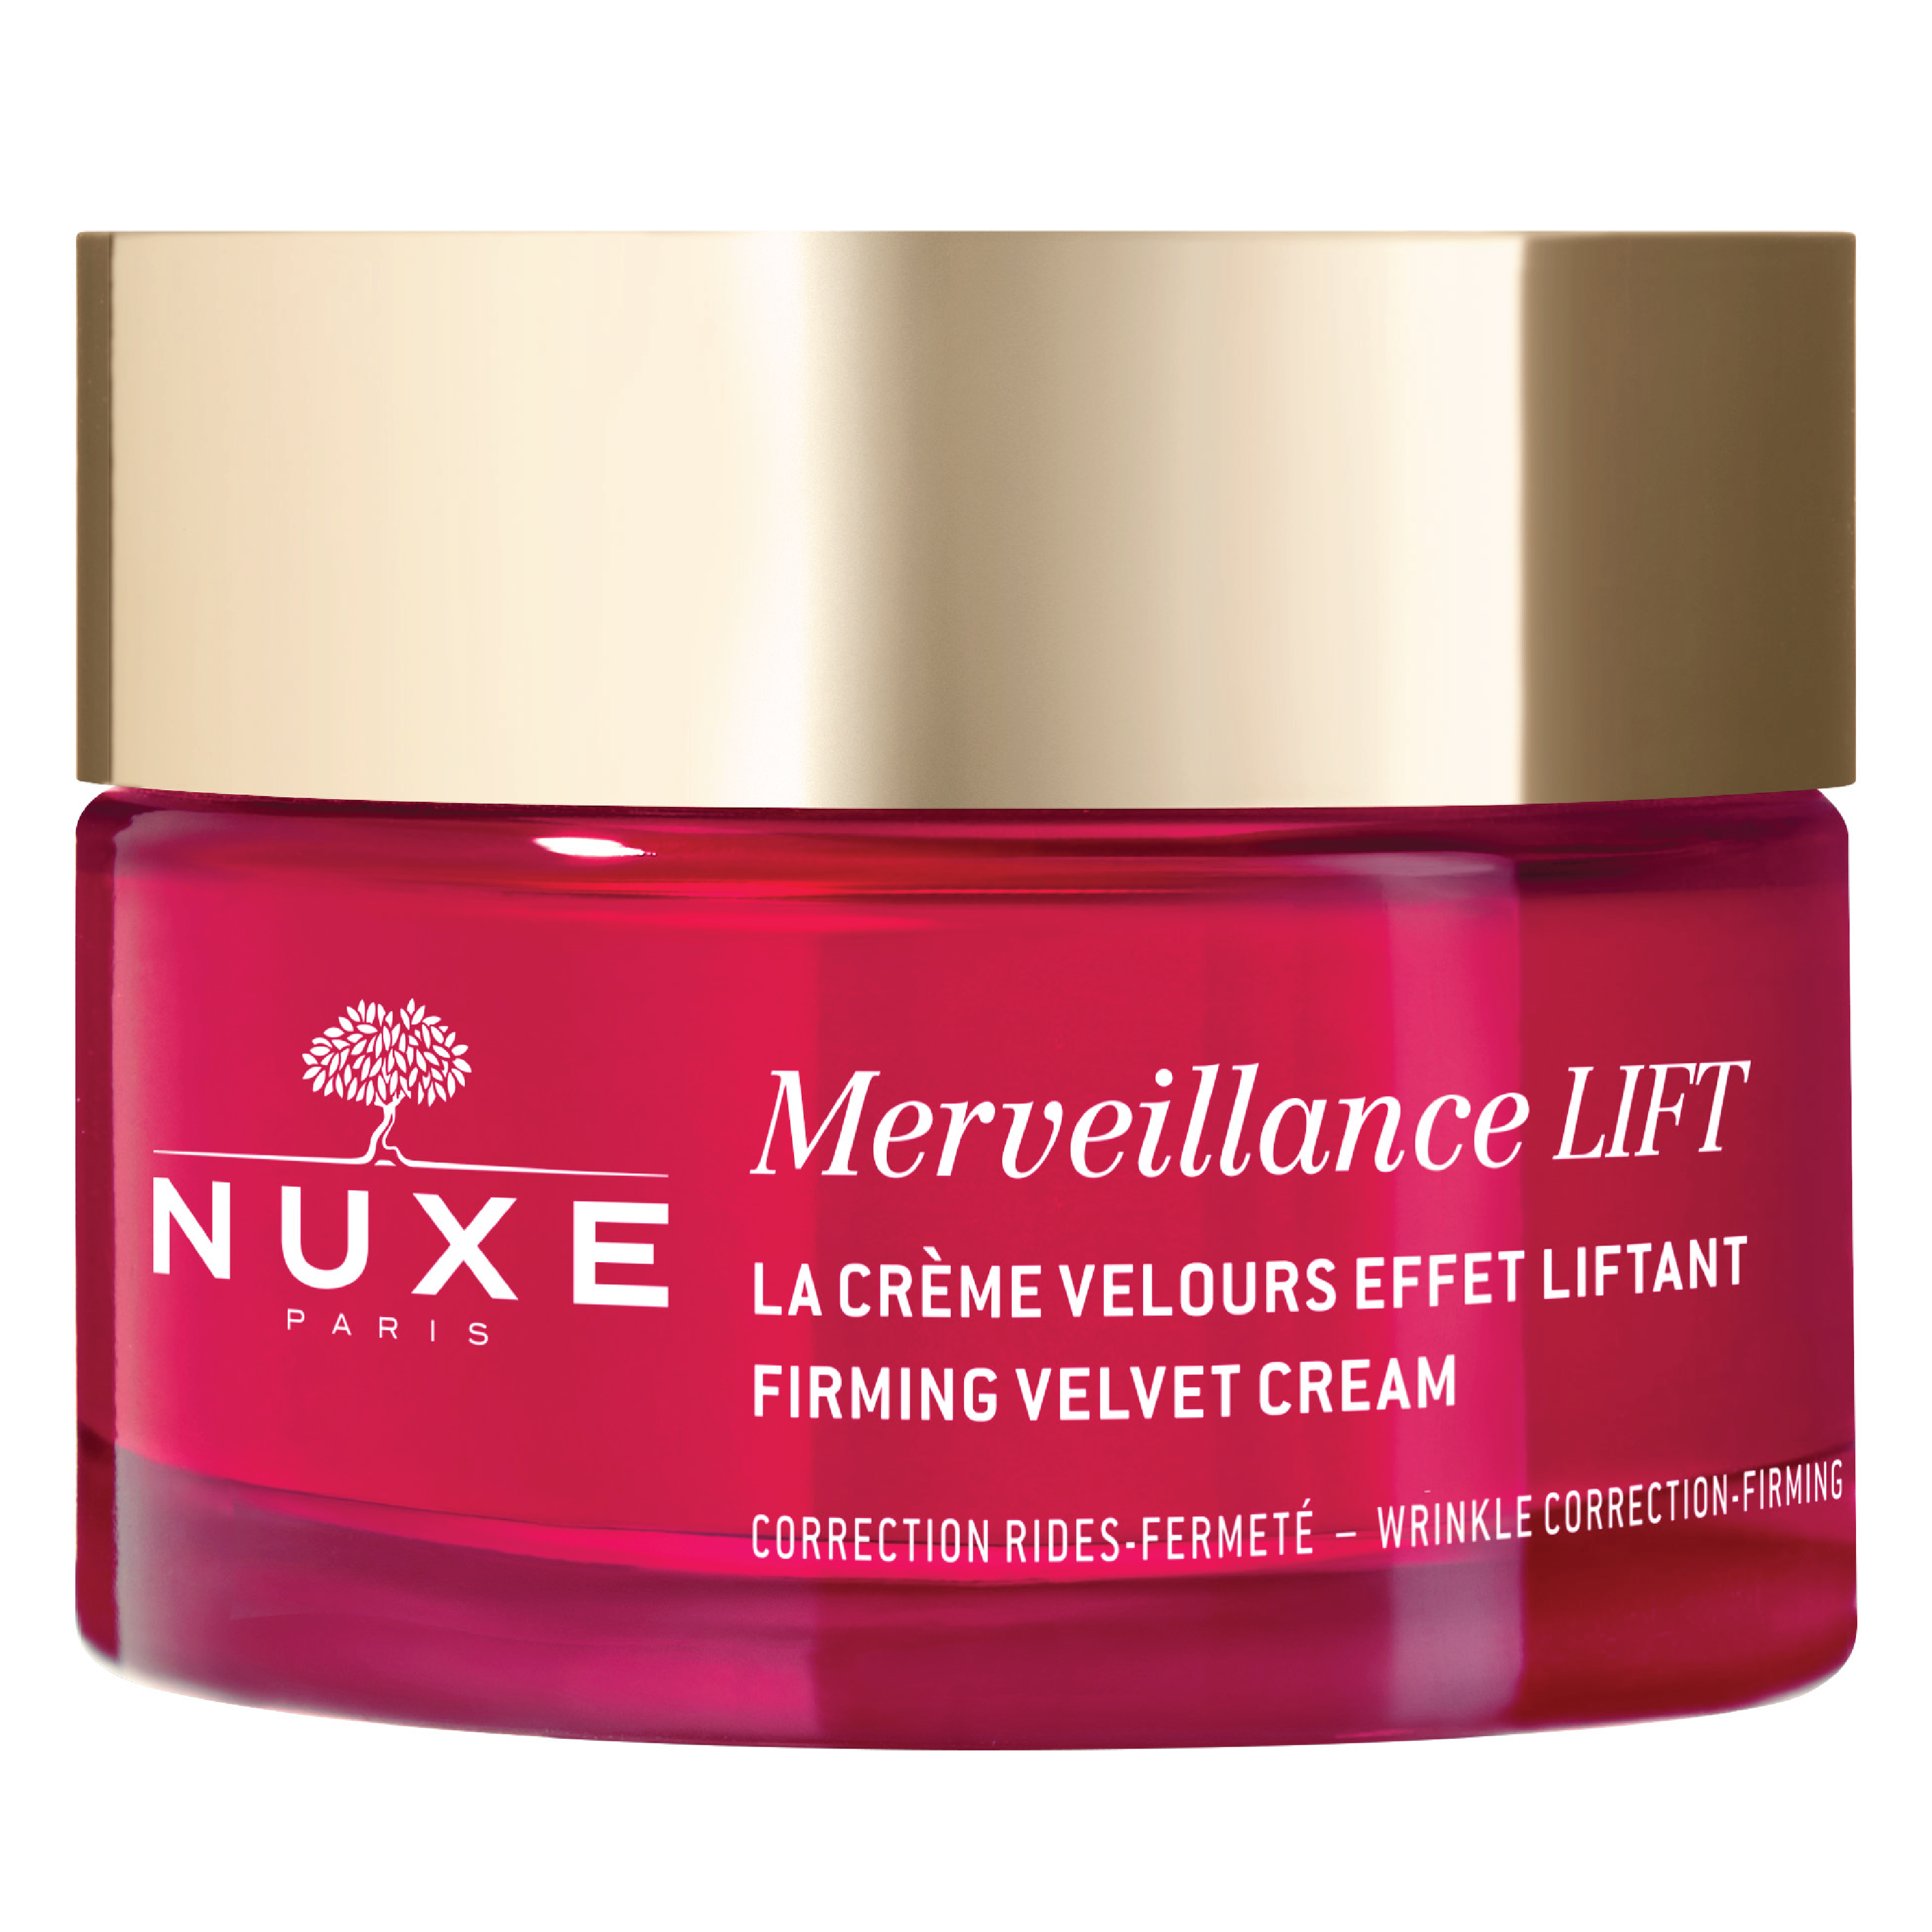 NUXE Merveillance Lift Firming Velvet Cream, 50 ml